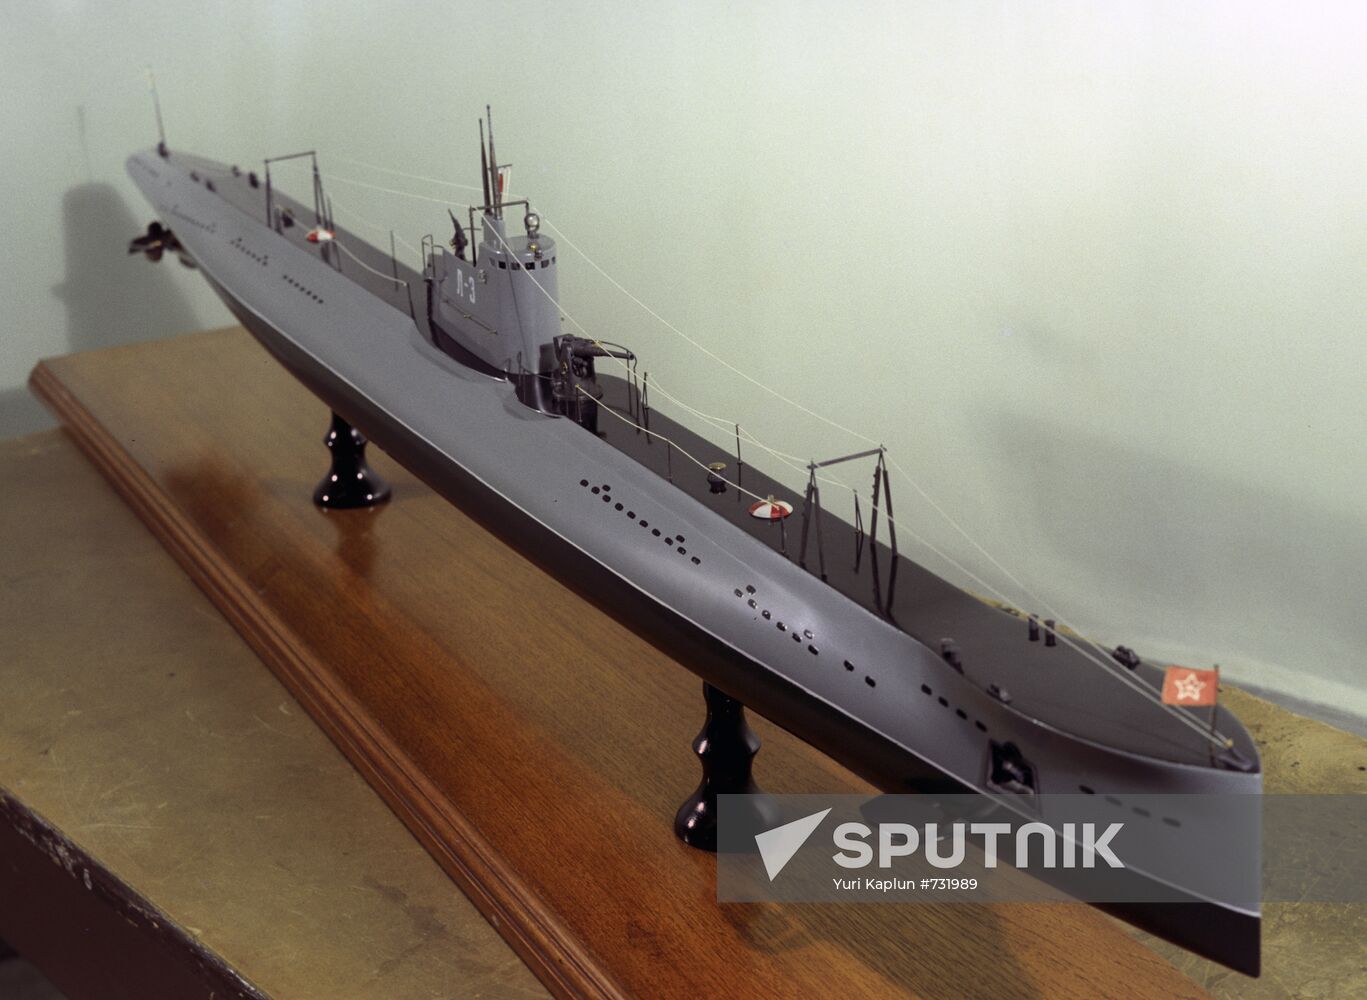 L-3 submarine model